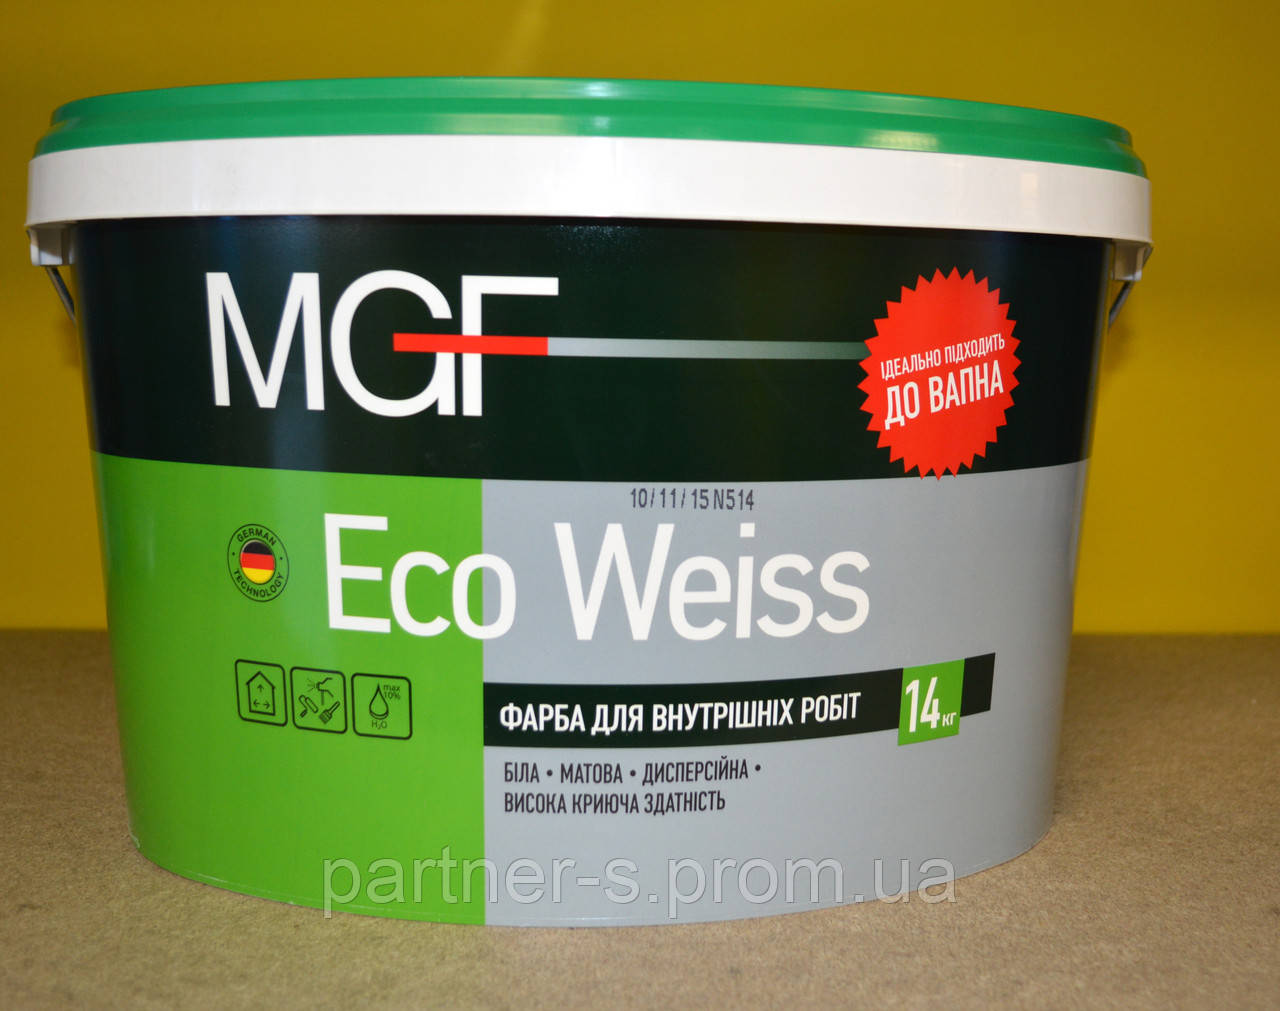 Фарба для внутрішніх робіт Eco Weiss MGF ( 14 кг)